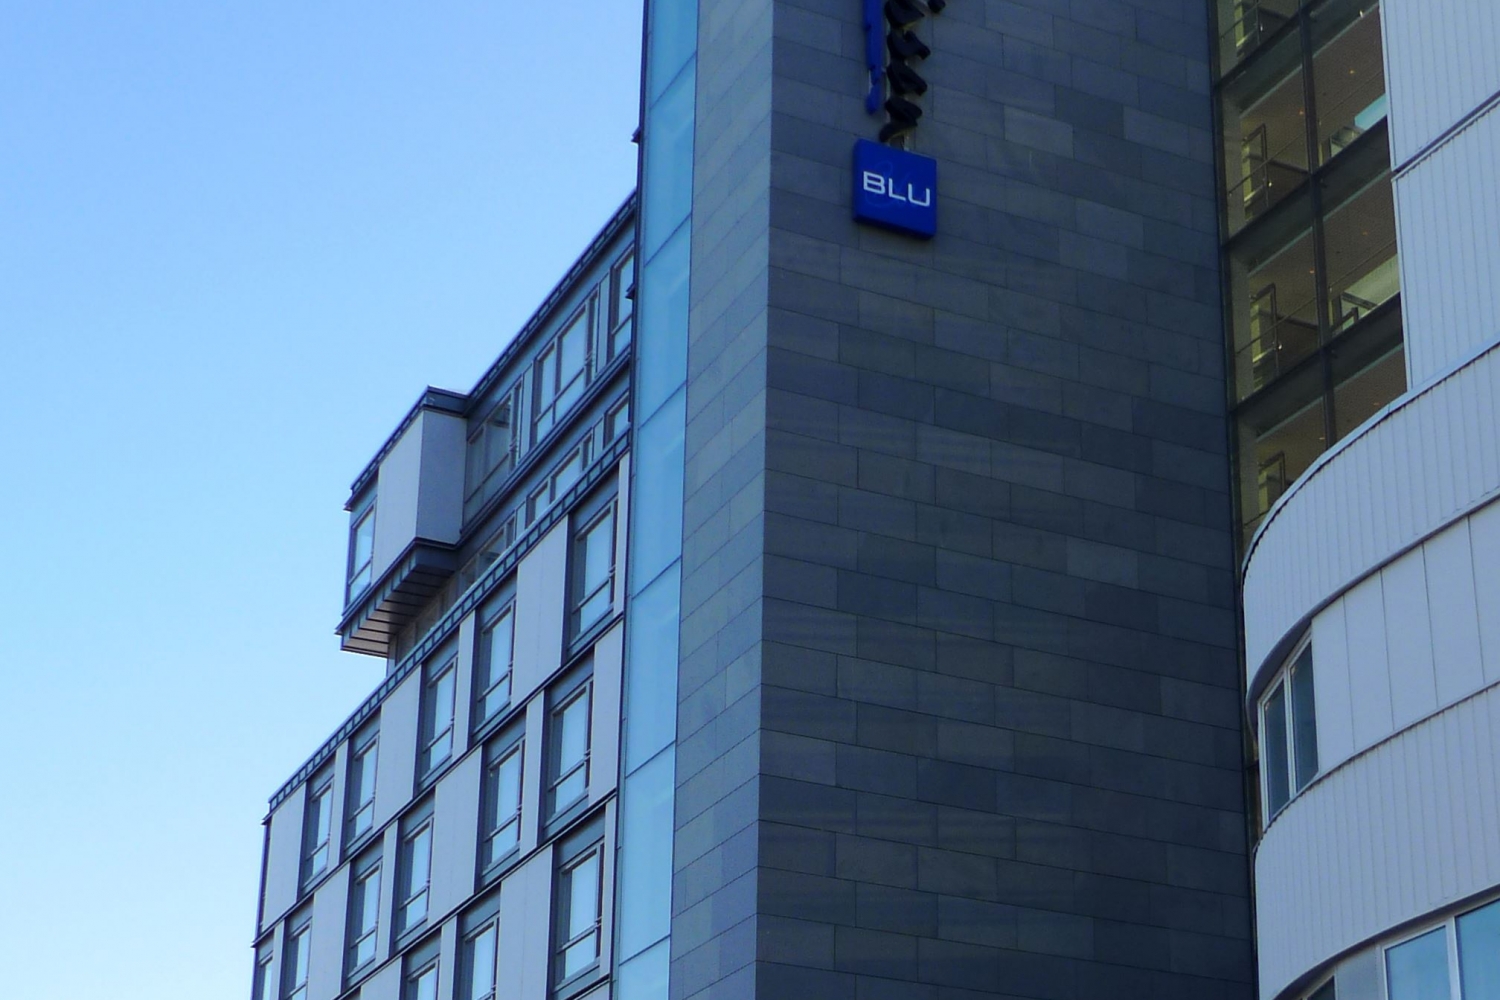 hotell logoen på siden av bygget